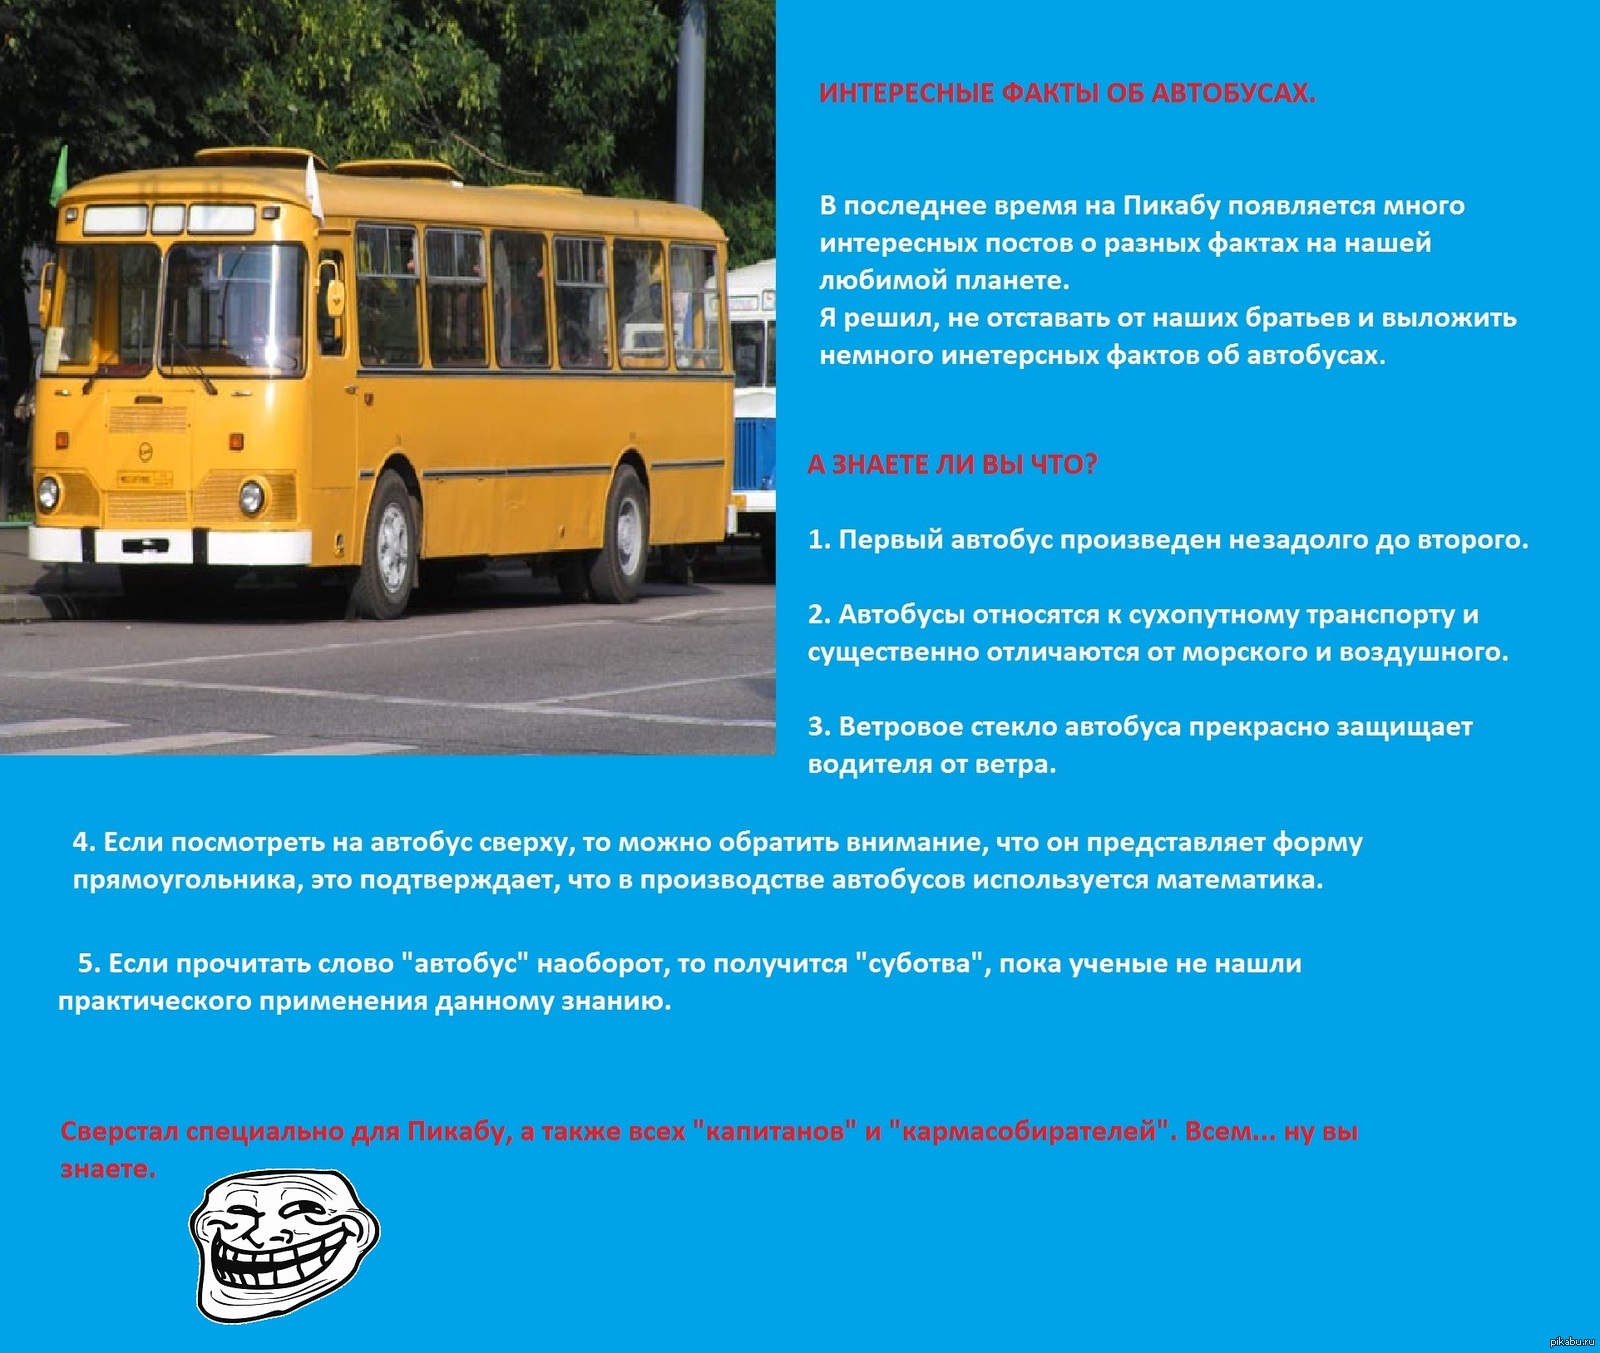 Автобус второго класса. Интересные факты об автобусе для детей. Интересная информация про транспорт. Проект автобус. Факты про автобус.